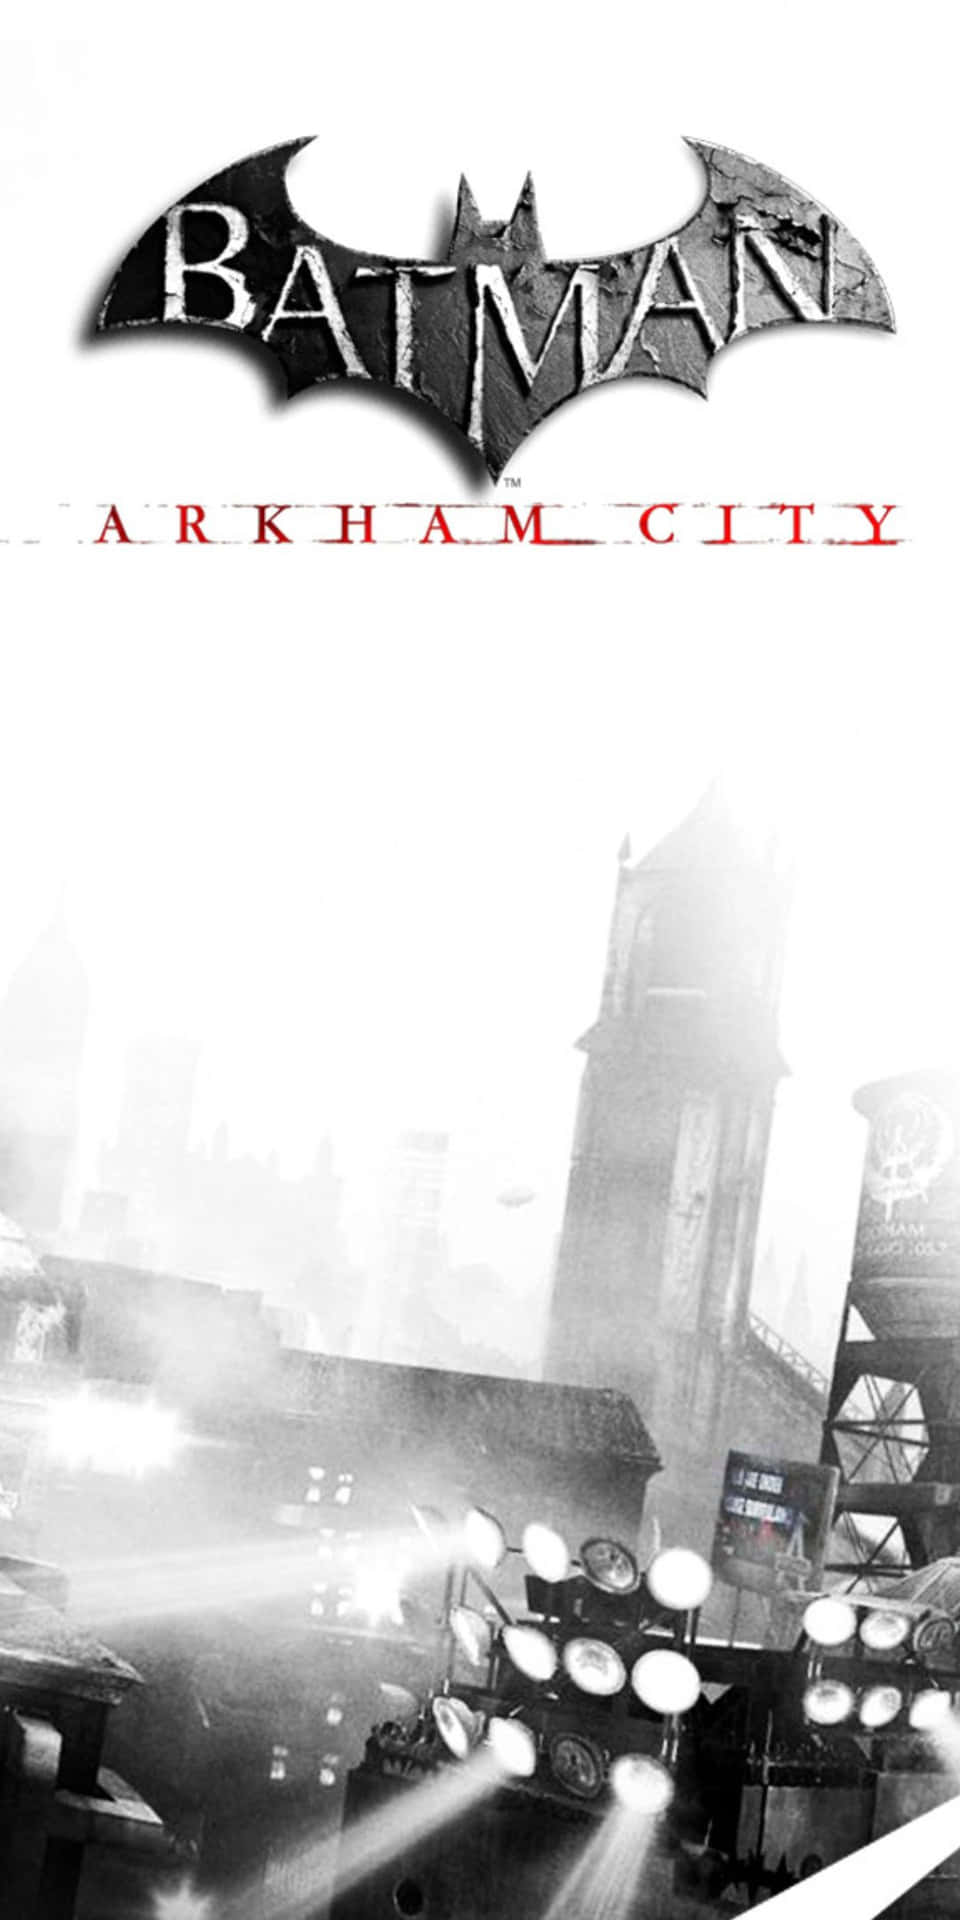 Fondode Pantalla Del Logo De Batman En Pixel 3 Con Silueta De Arkham City.